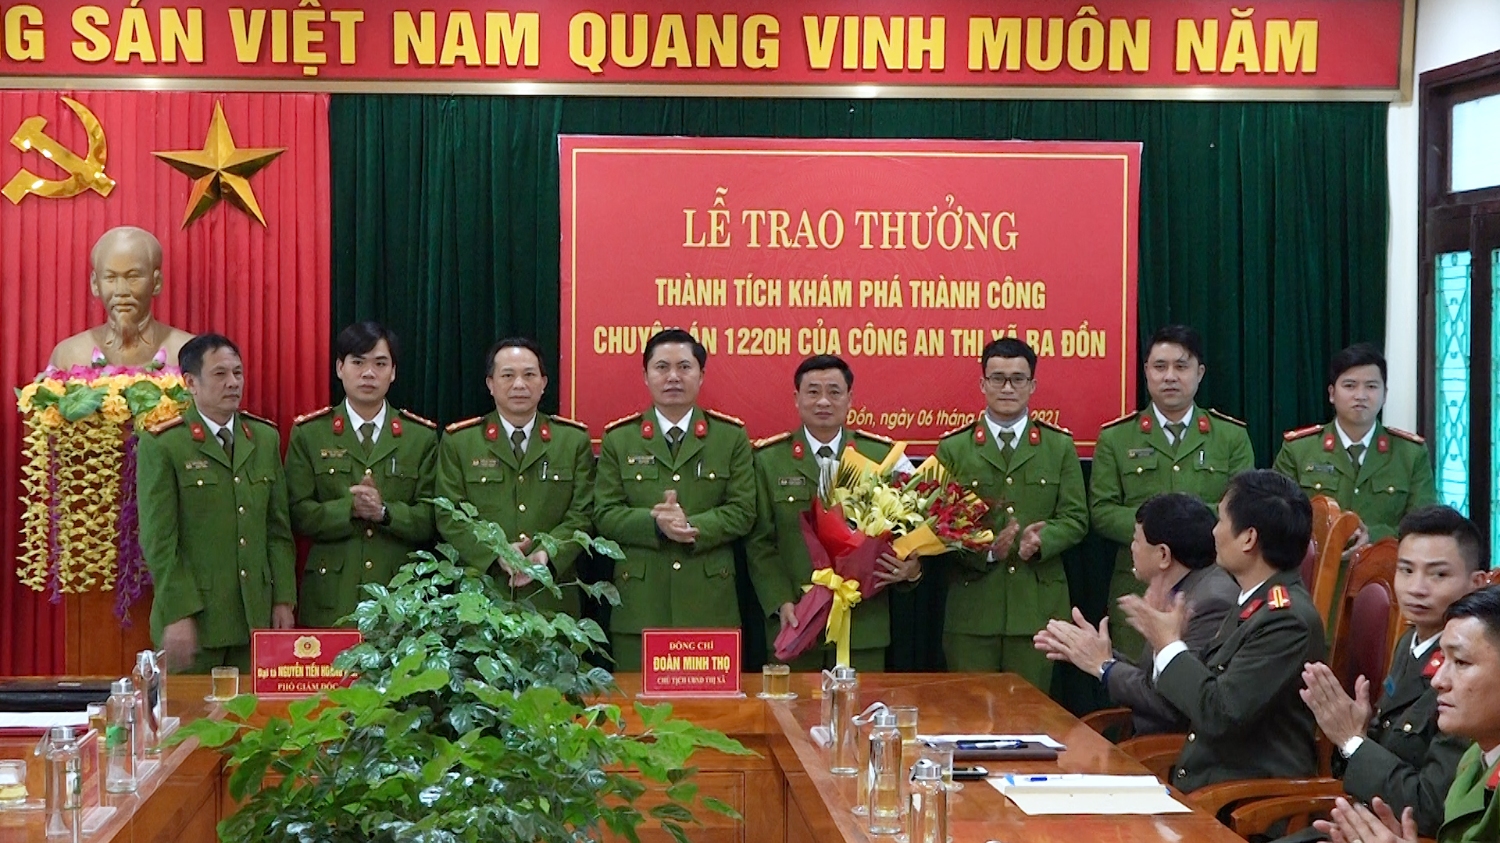 Đại tá Nguyễn Tiến Hoàng Anh – Phó Giám đốc Công an tỉnh Quảng Bình trao hoa và tiền thưởng cho các cán bộ, chiến sỹ trong Ban chuyên án của công an thị xã Ba Đồn